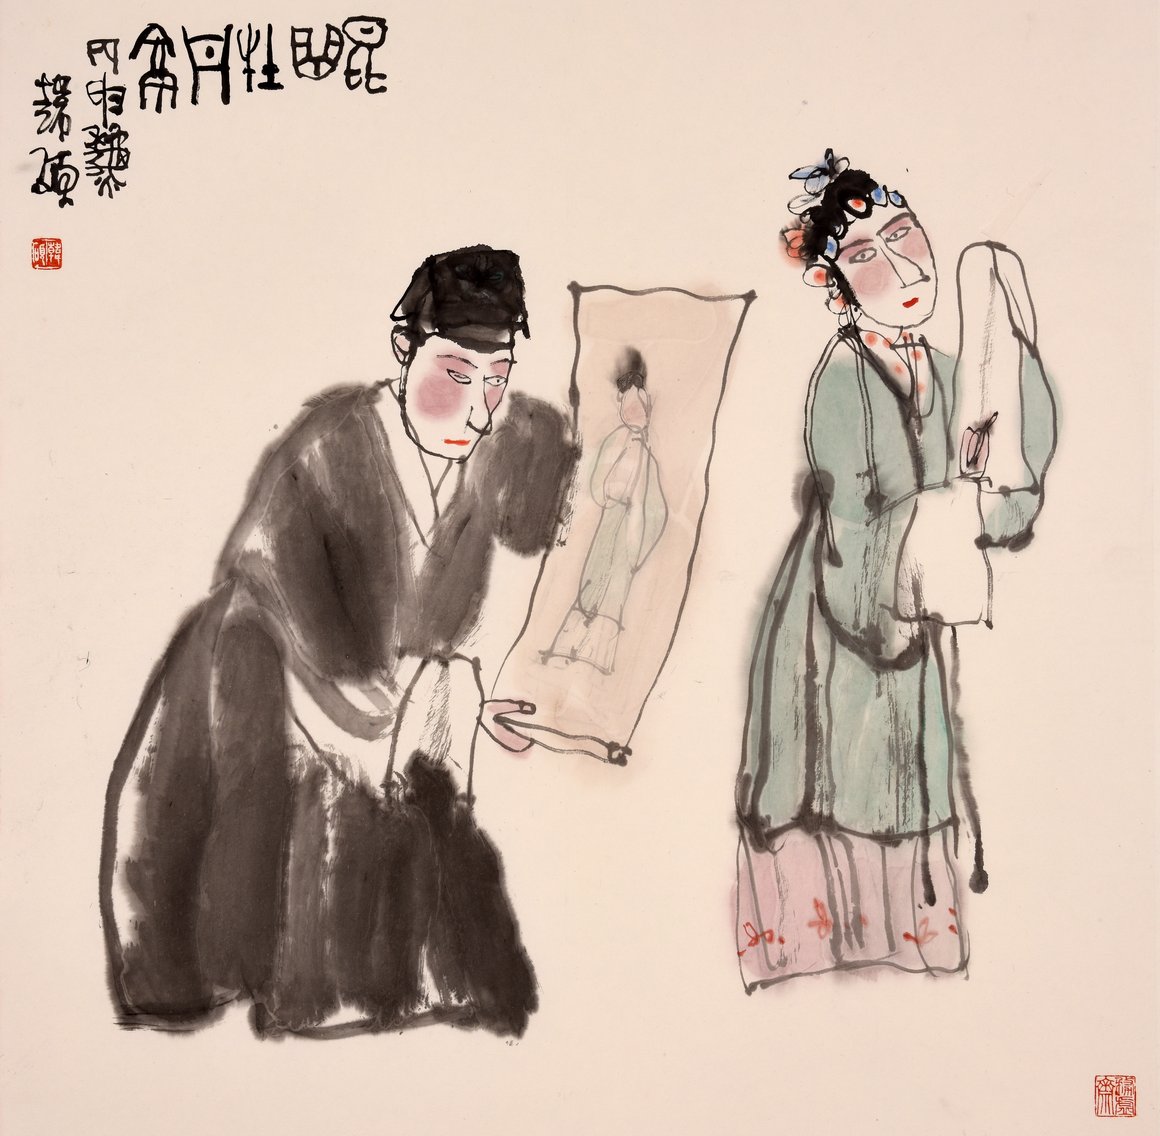 漫游牡丹亭纪念汤显祖逝世400周年2016中国戏曲人物画年展